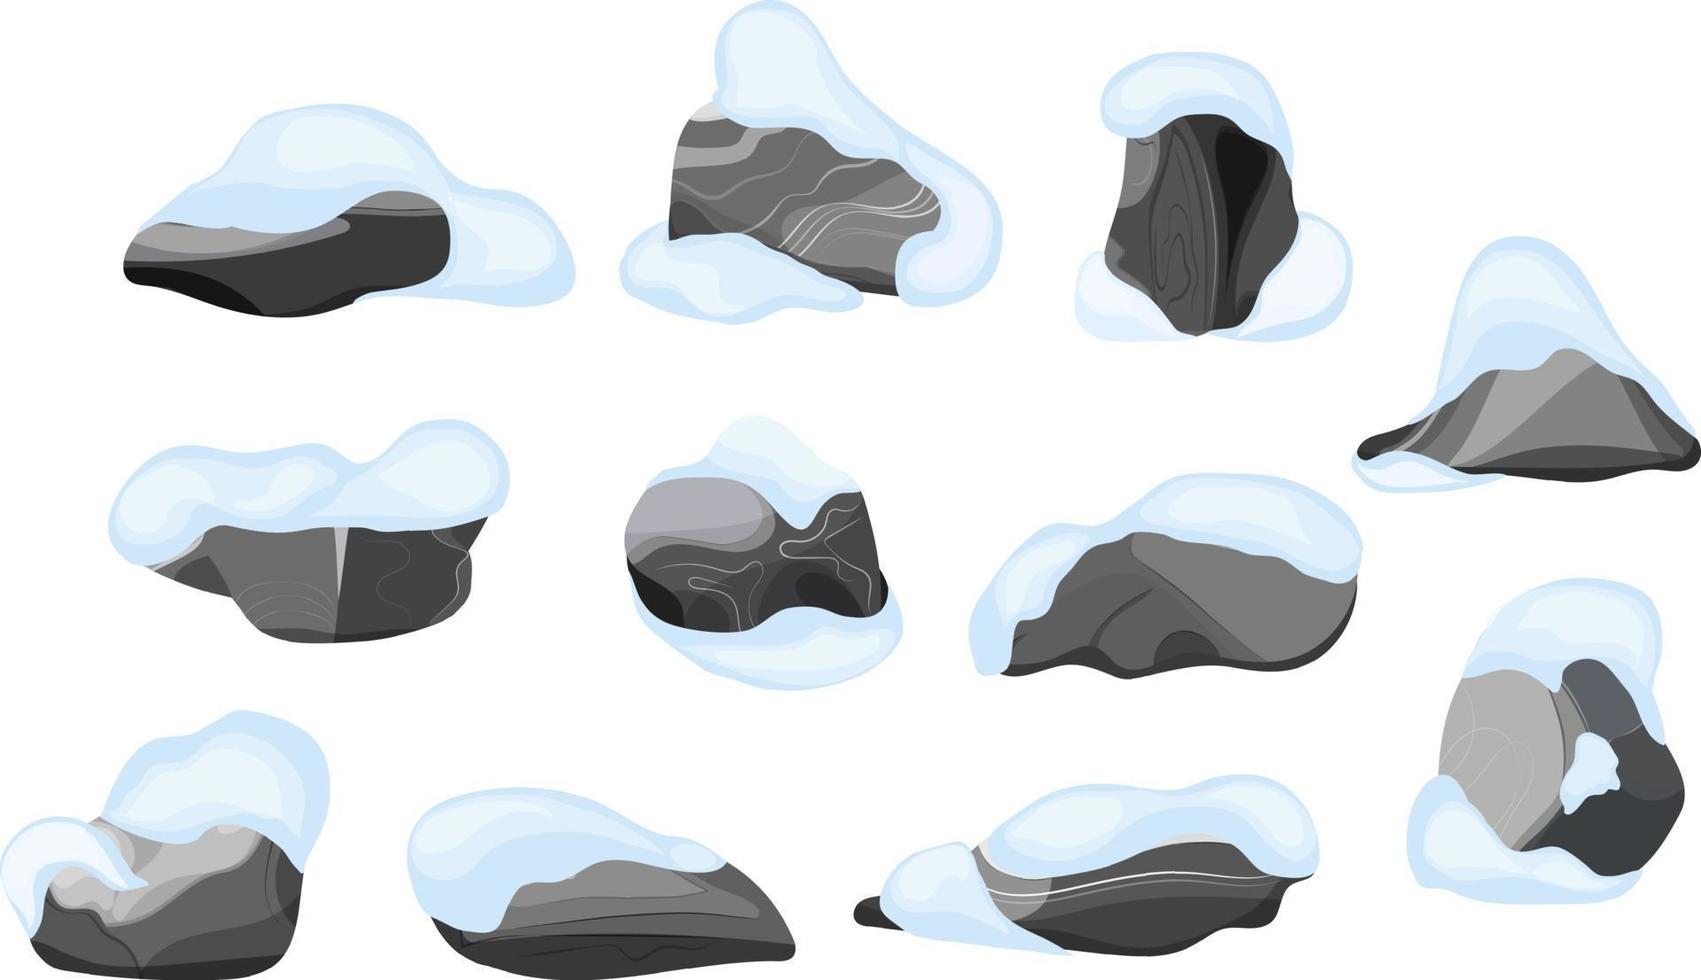 collezione di pietre di vario forme nel il neve.costiera ciottoli, ciottoli, ghiaia, minerali e geologica formazioni.roccia frammenti, massi e edificio Materiale. vettore